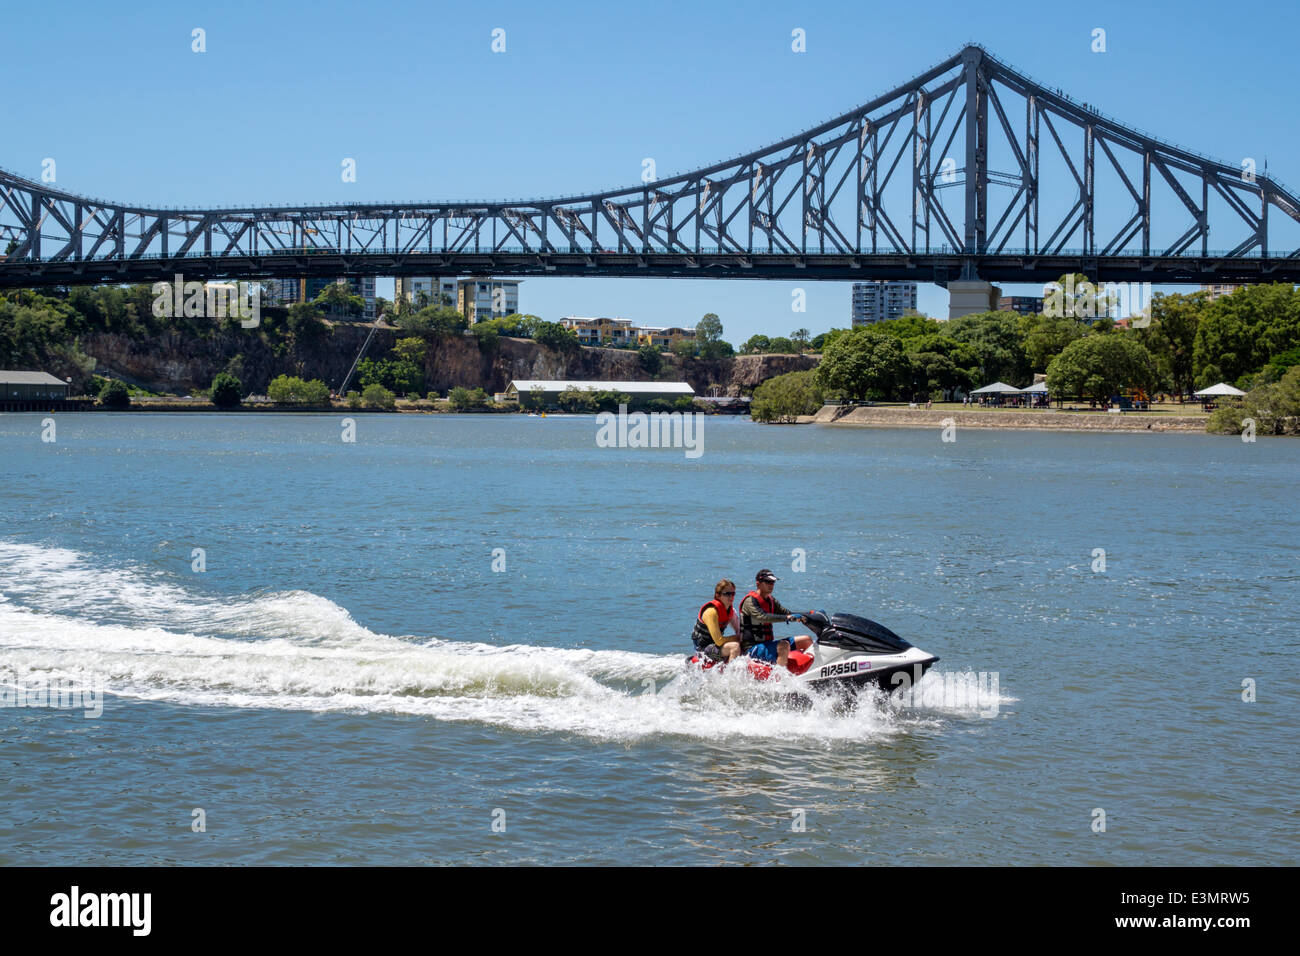 Brisbane Australien, Brisbane River, Story Bridge, Wave Runner, Jet Ski, Mann Männer männlich, Reiten, Passagiere Fahrer Fahrer, AU140316013 Stockfoto